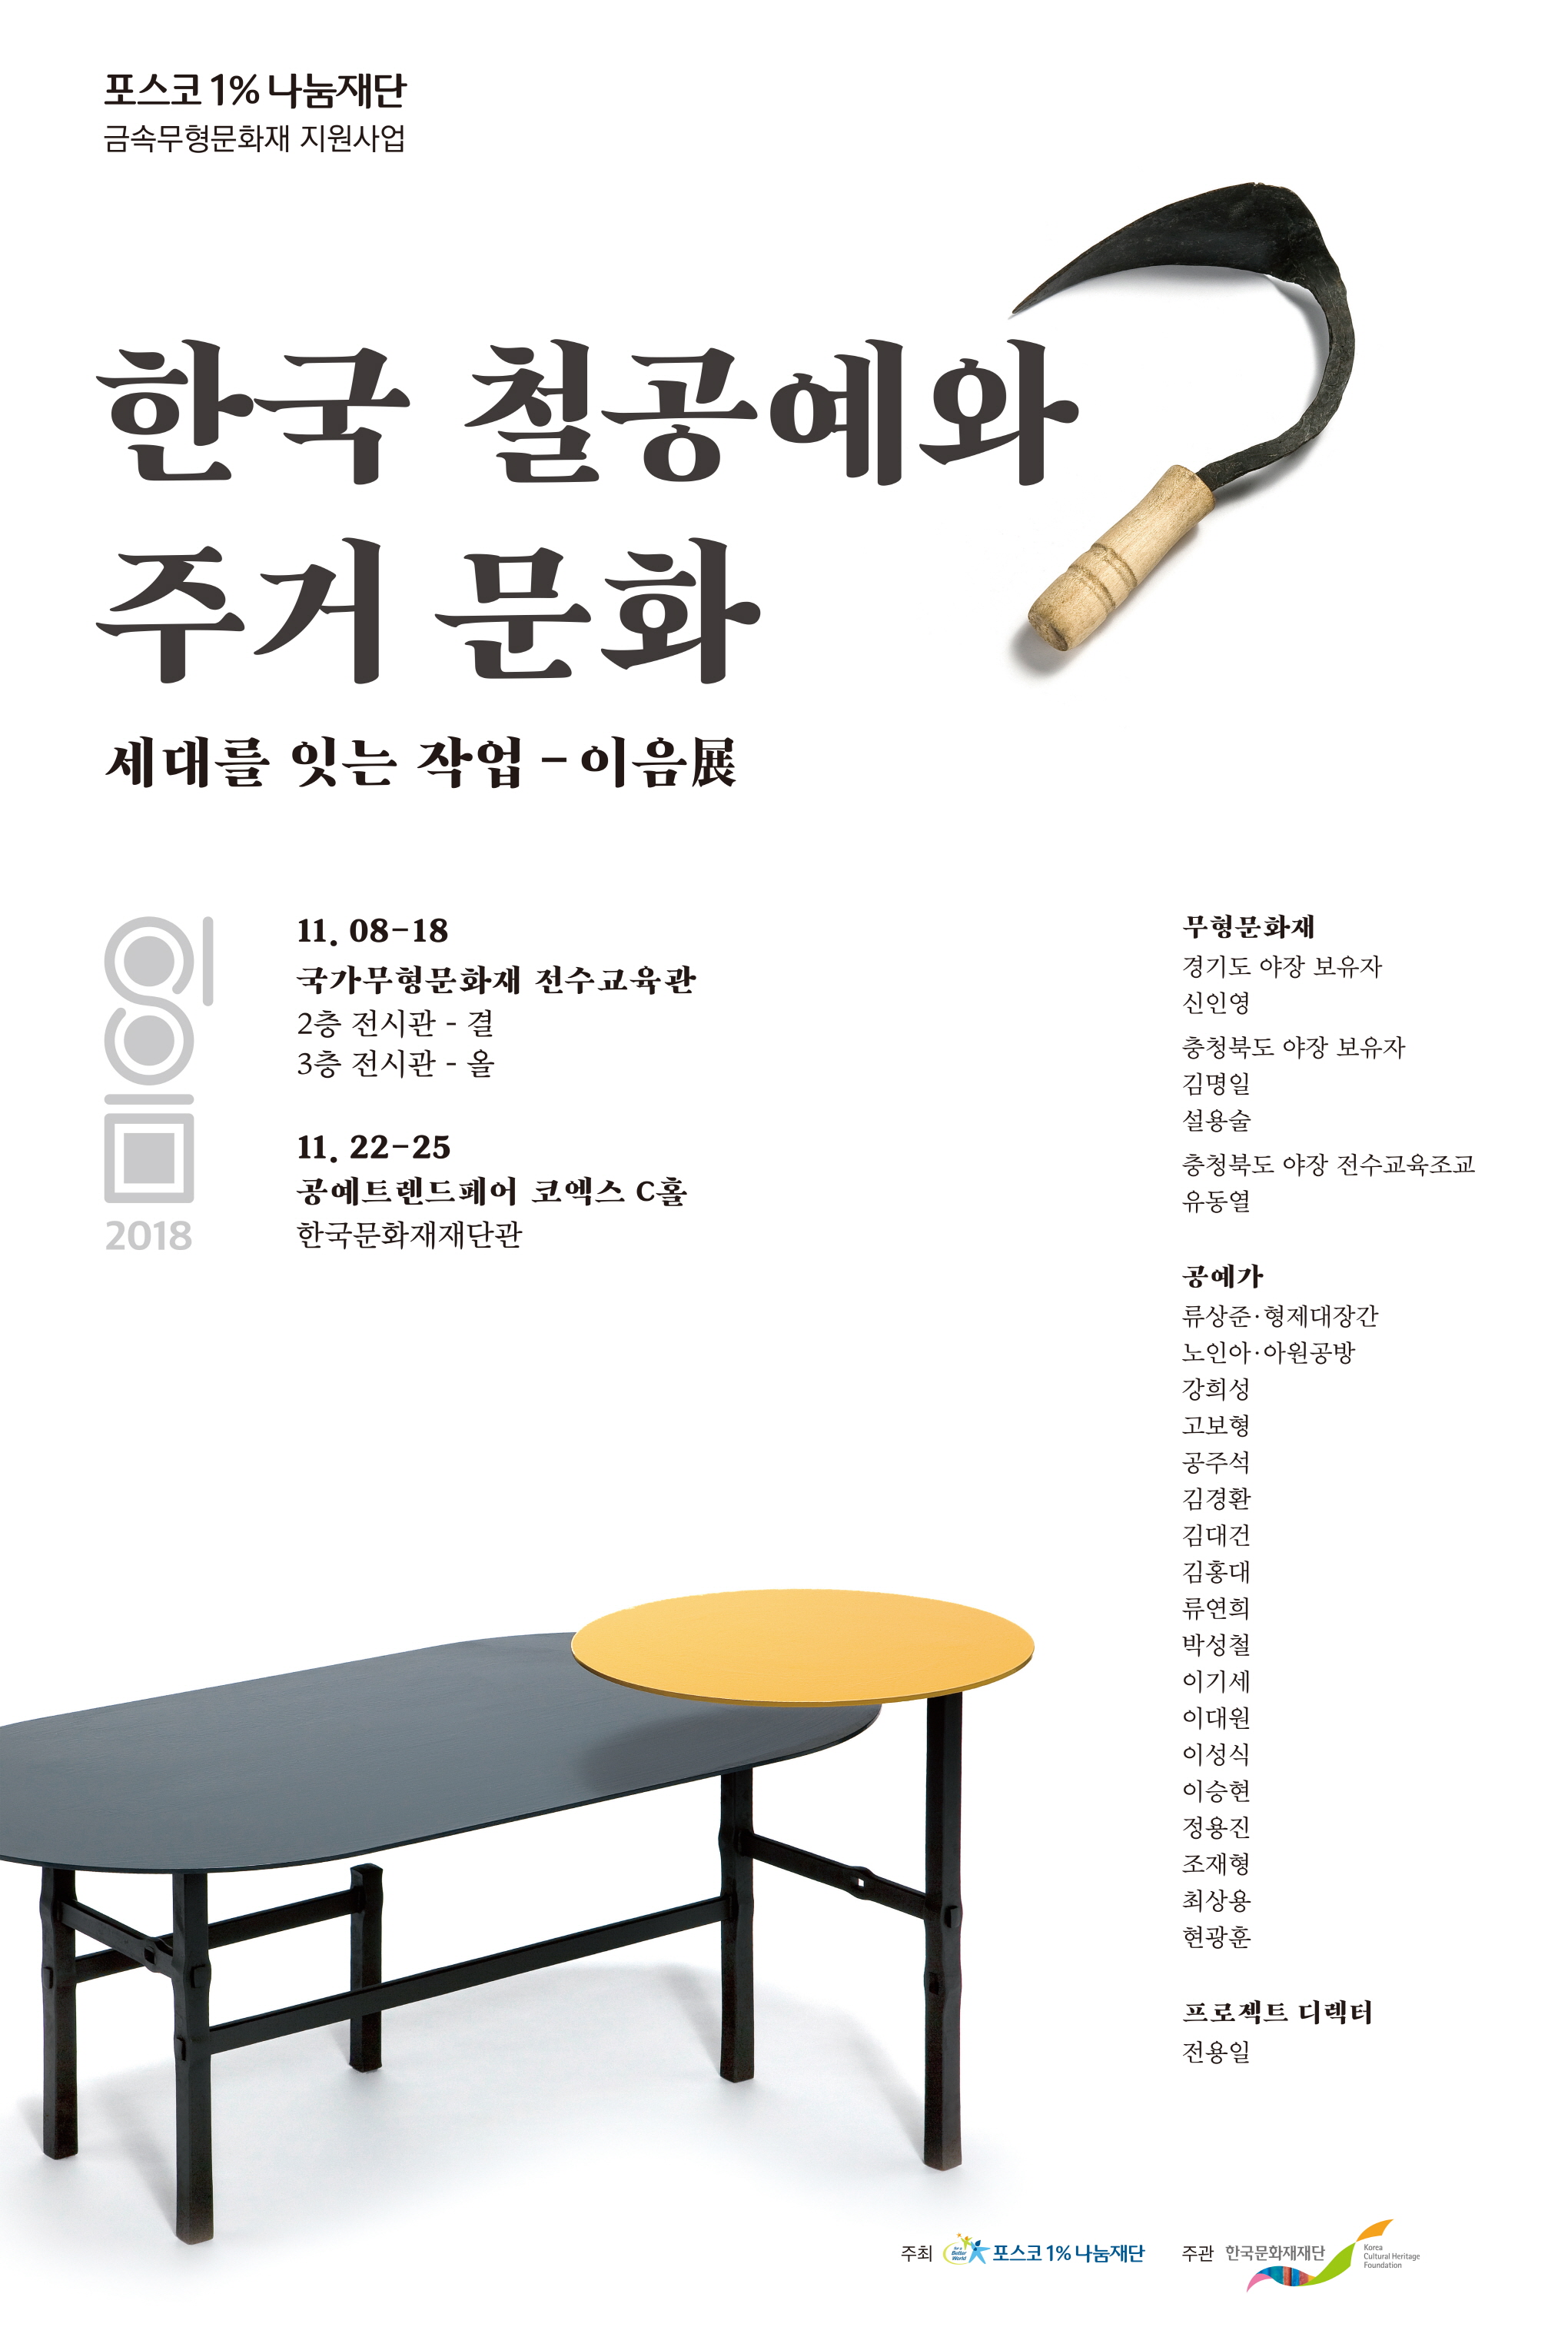 세대를 잇는 작업 - 이음展 『한국 철공예와 주거문화』 이미지